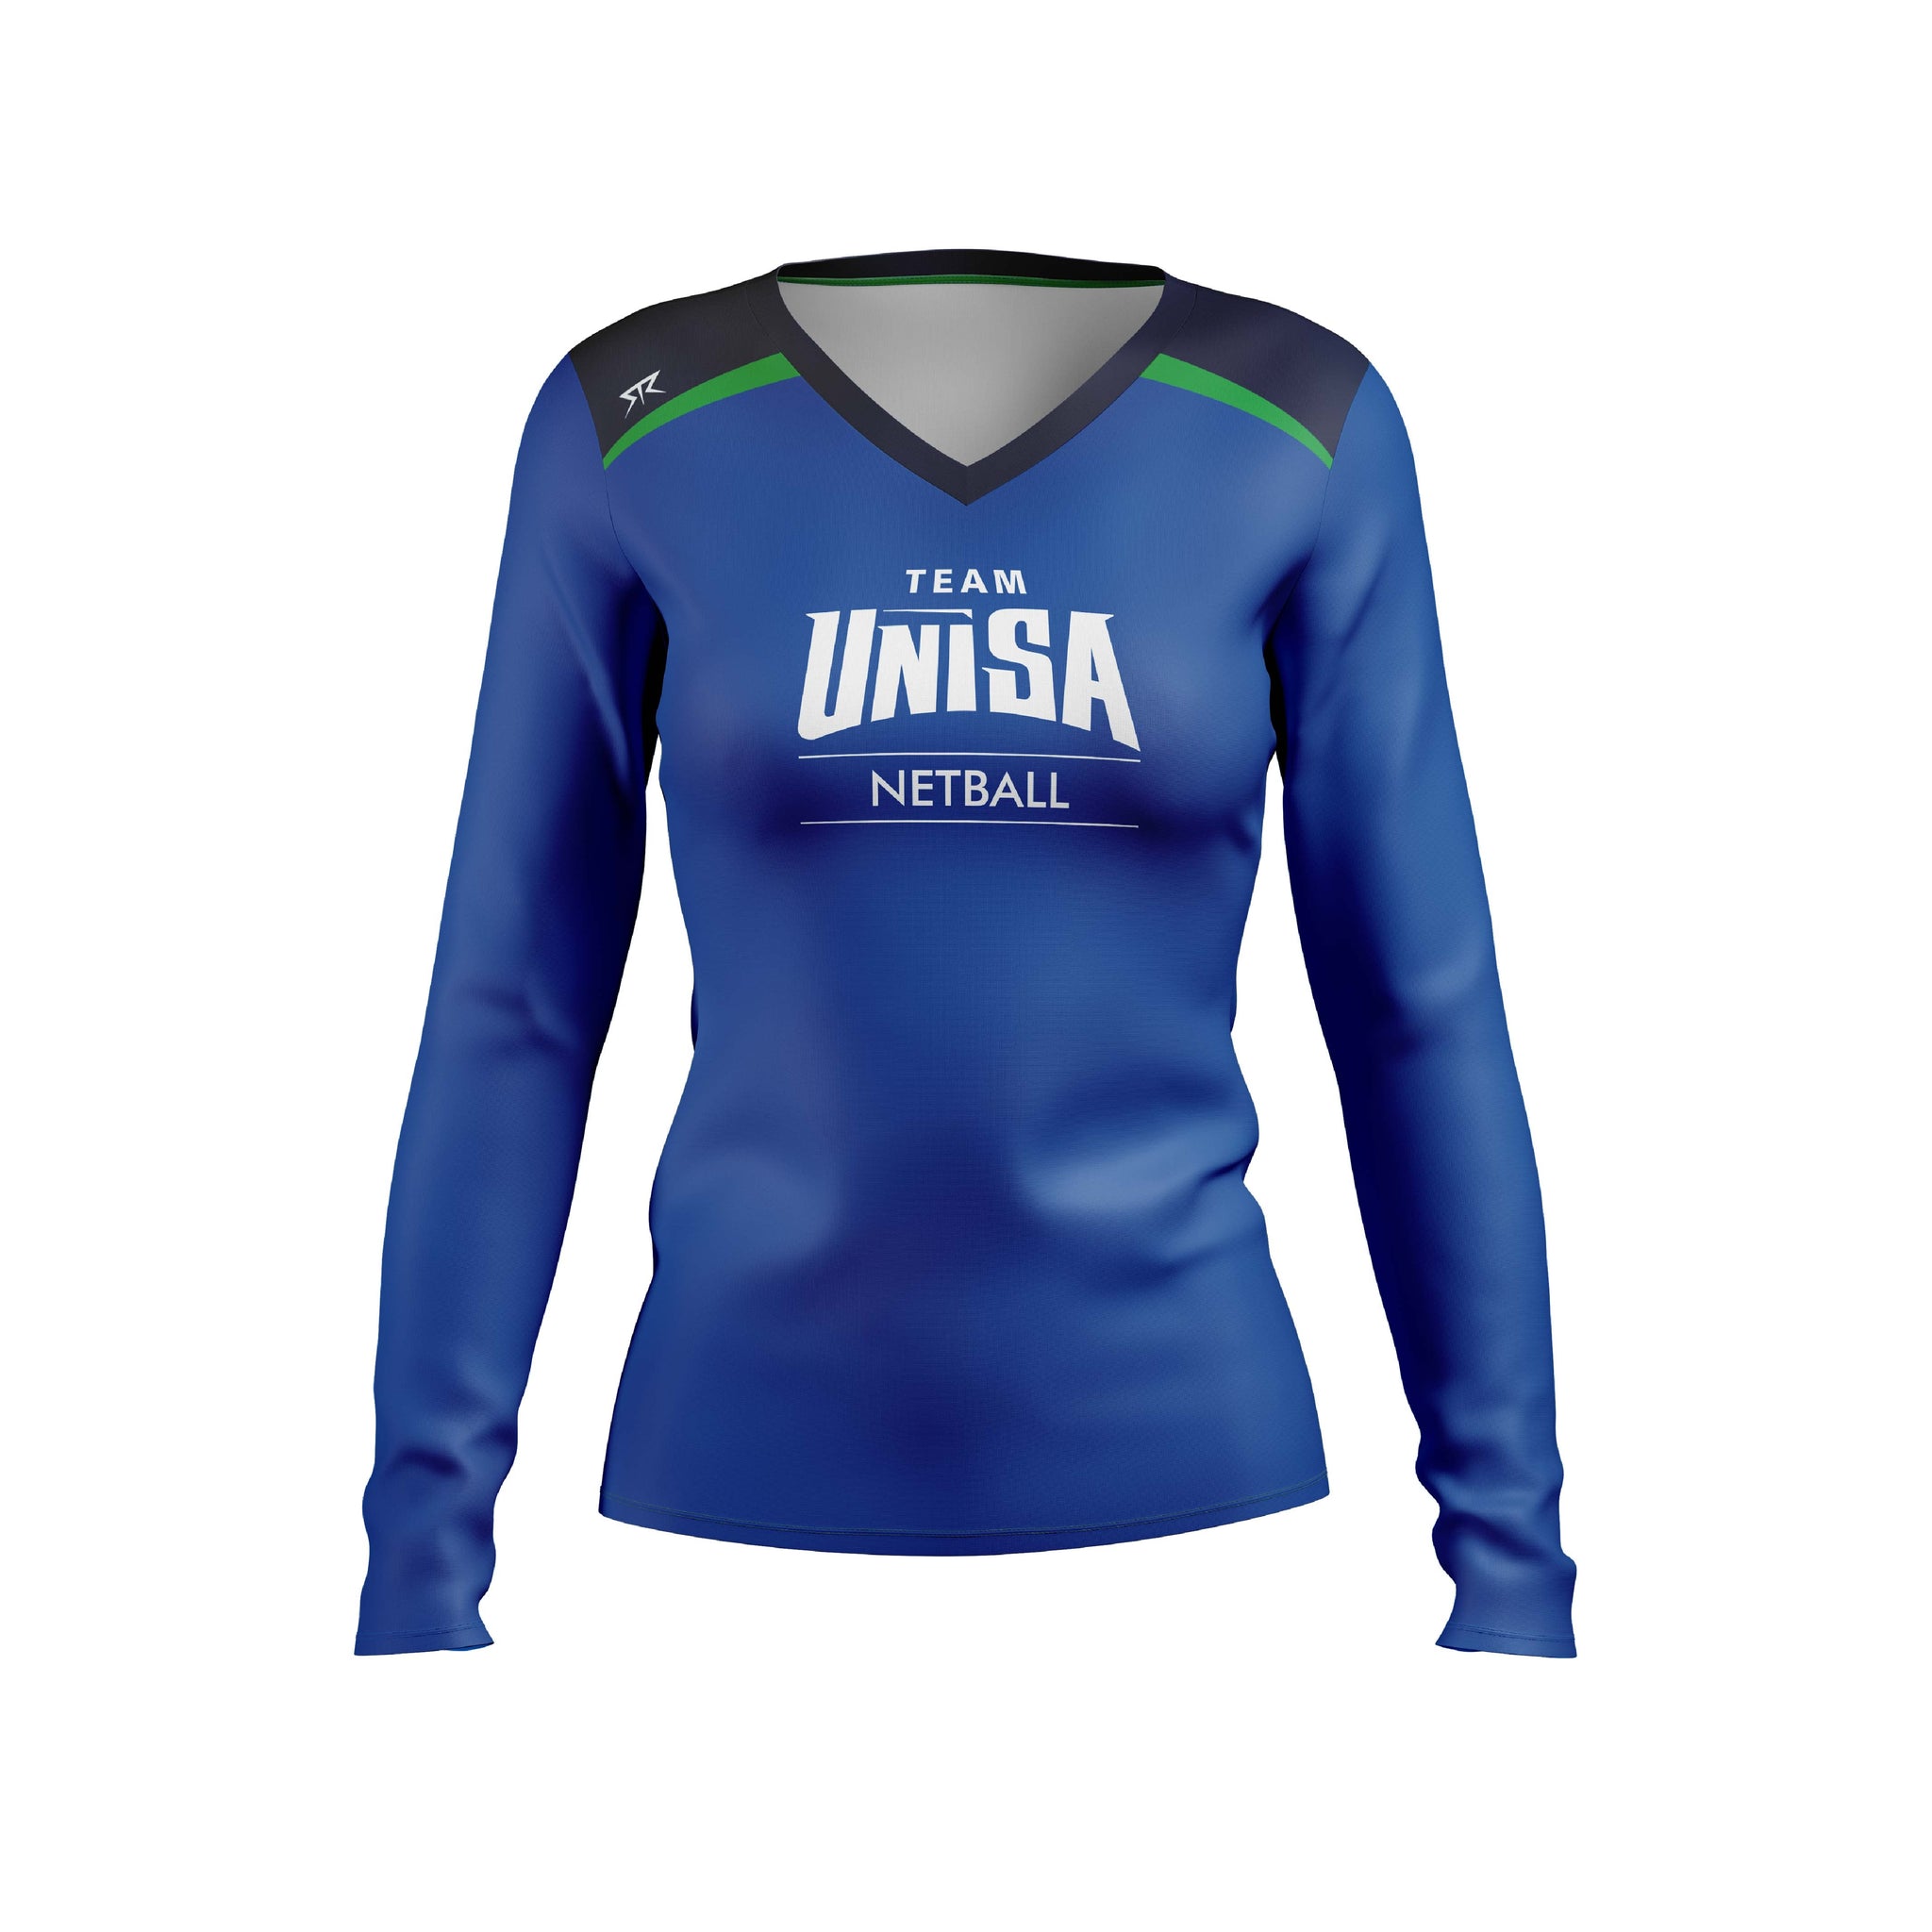 UniSA Netball Women's Training Shirt LS